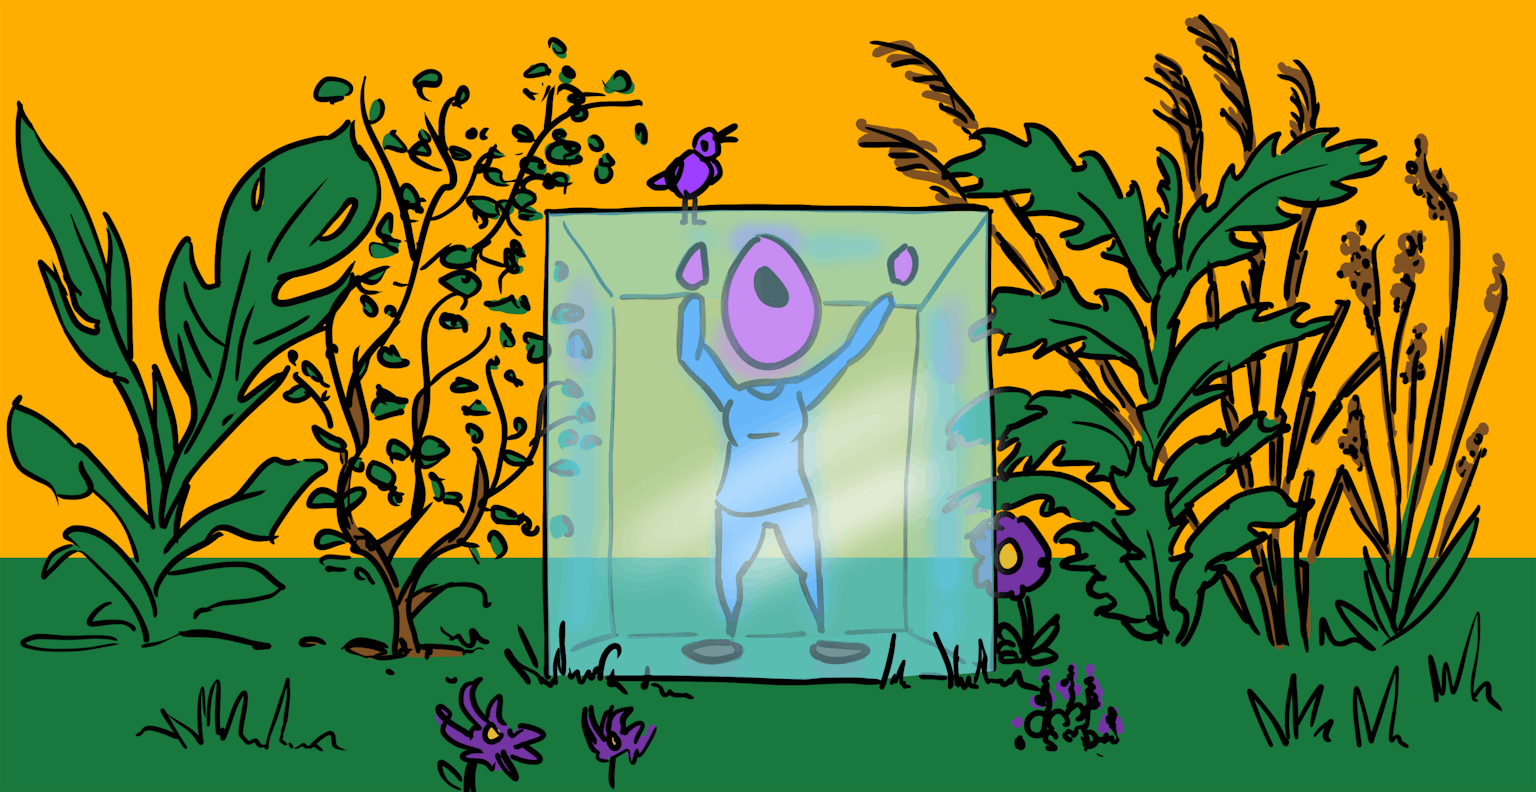 Een cartoon van een persoon in een glazen doos. Op de glazen doos zit een vogel en om de doos groeien planten en struiken.